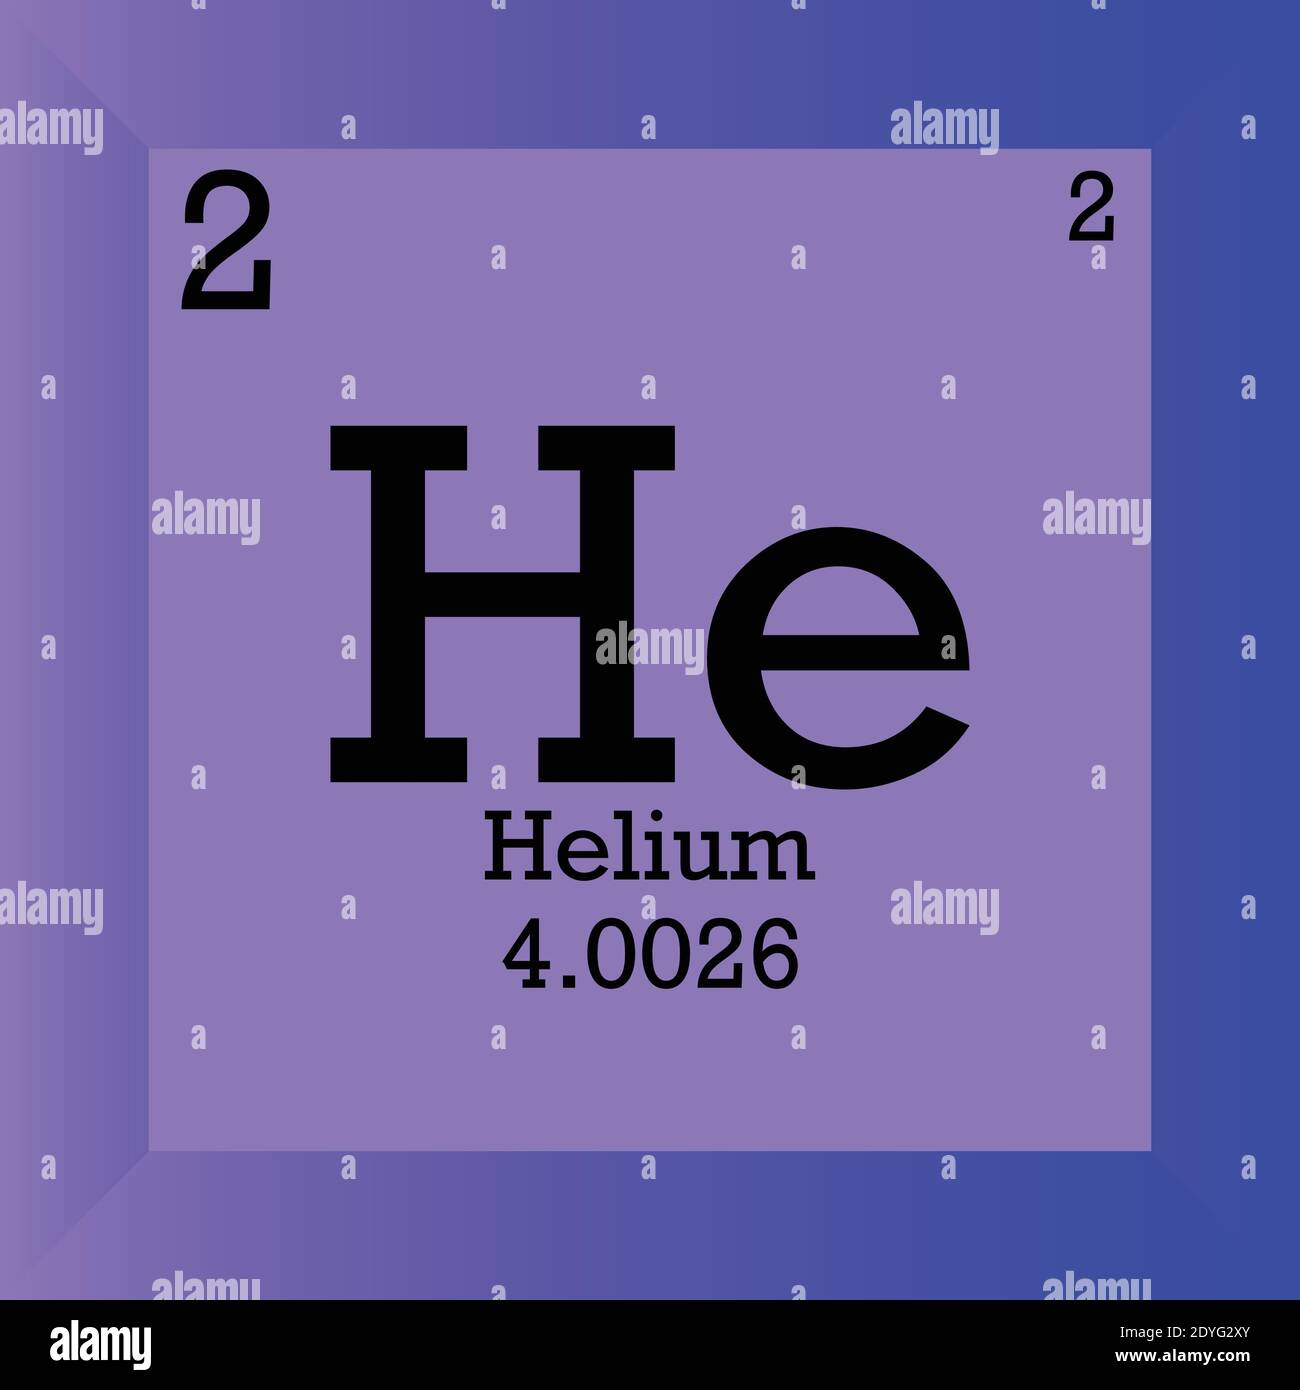 He Helium Chemical Element Periodensystem. Einzelvektordarstellung, Elementsymbol mit molarer Masse, Ordnungszahl und Elektronenkonf. Stock Vektor